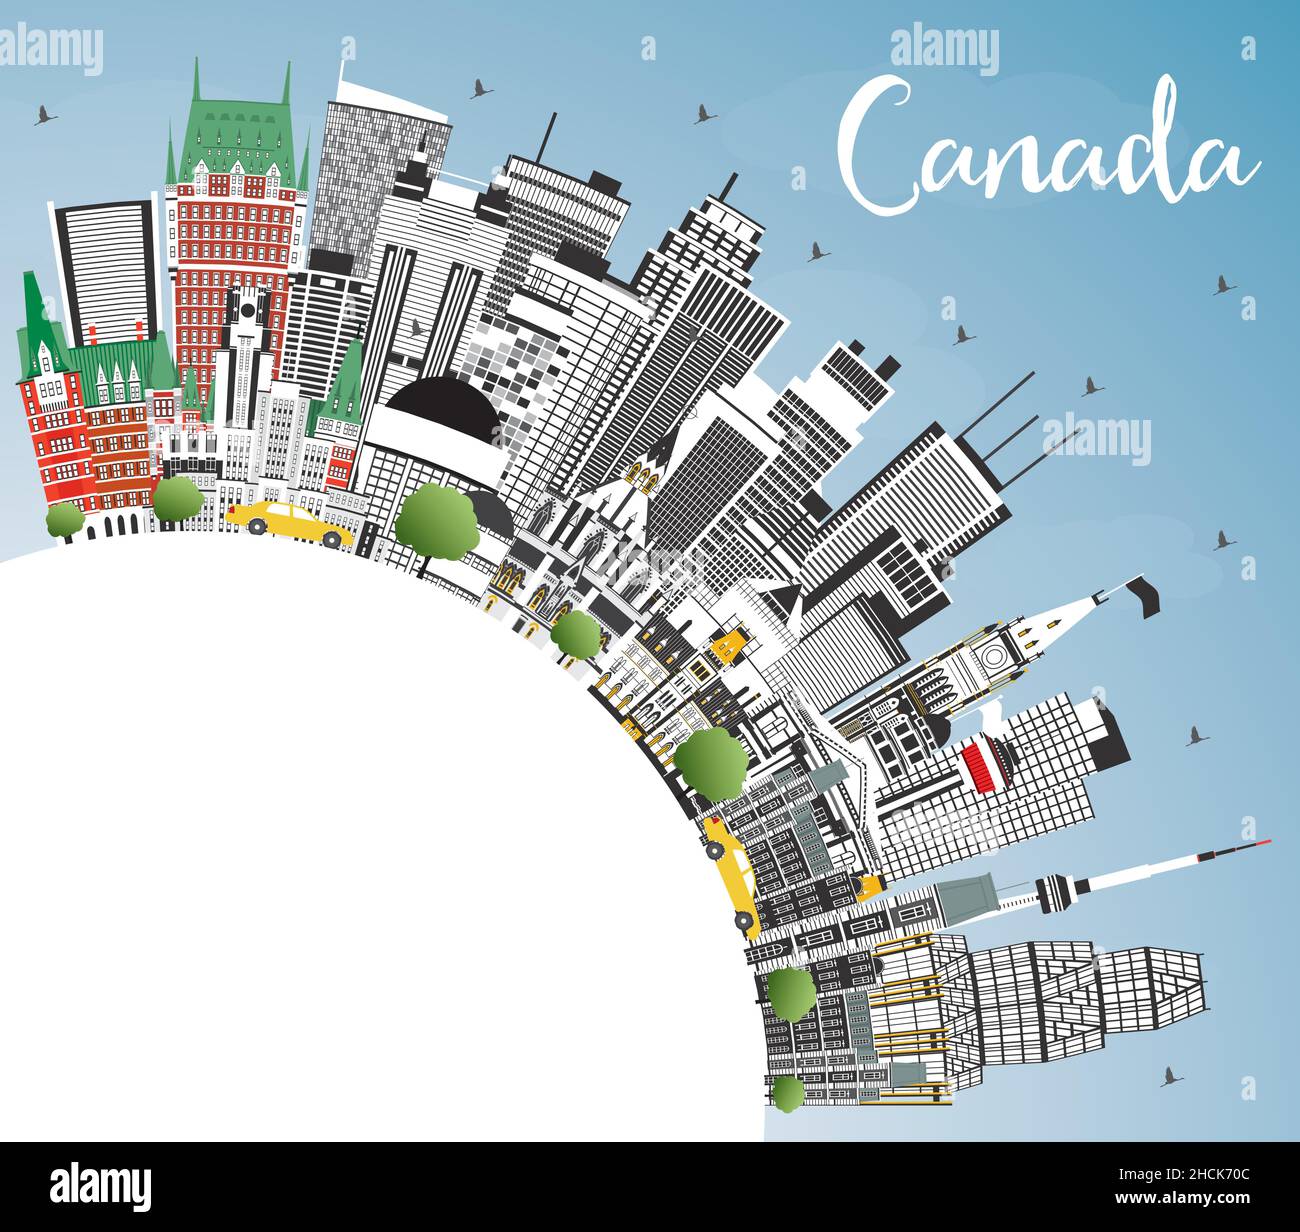 Canada City Skyline avec bâtiments gris, ciel bleu et espace de copie. Illustration vectorielle. Concept avec architecture historique. Paysage urbain du Canada. Illustration de Vecteur